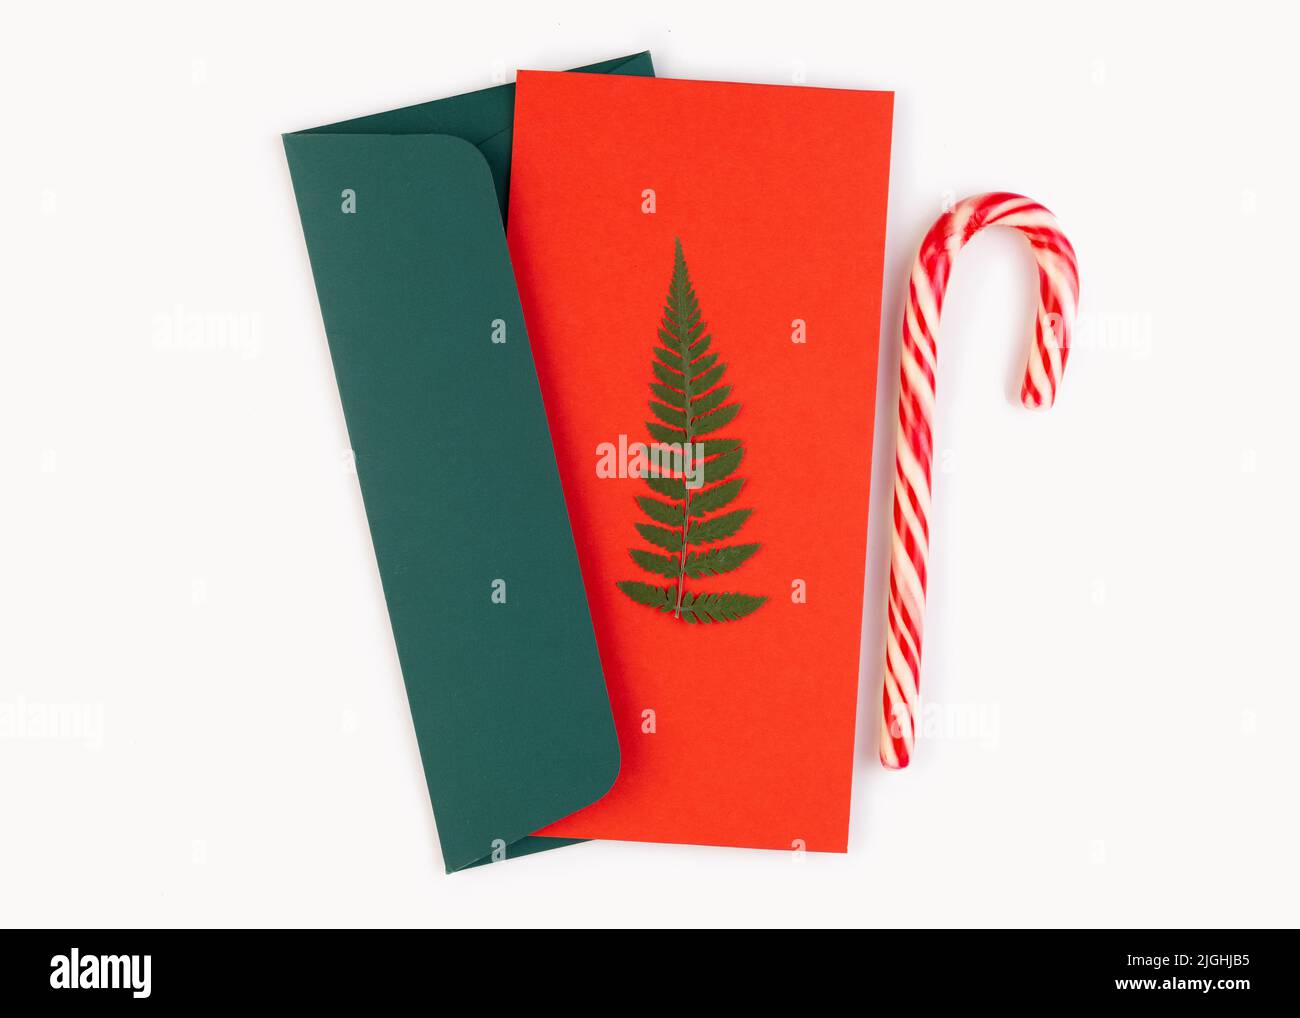 Albero di Natale fatto da foglie di felce essiccate pressate su una cartolina rossa in una busta verde. Vicino alla canna di caramella. Biglietto d'auguri natalizio fatto a mano in Foto Stock